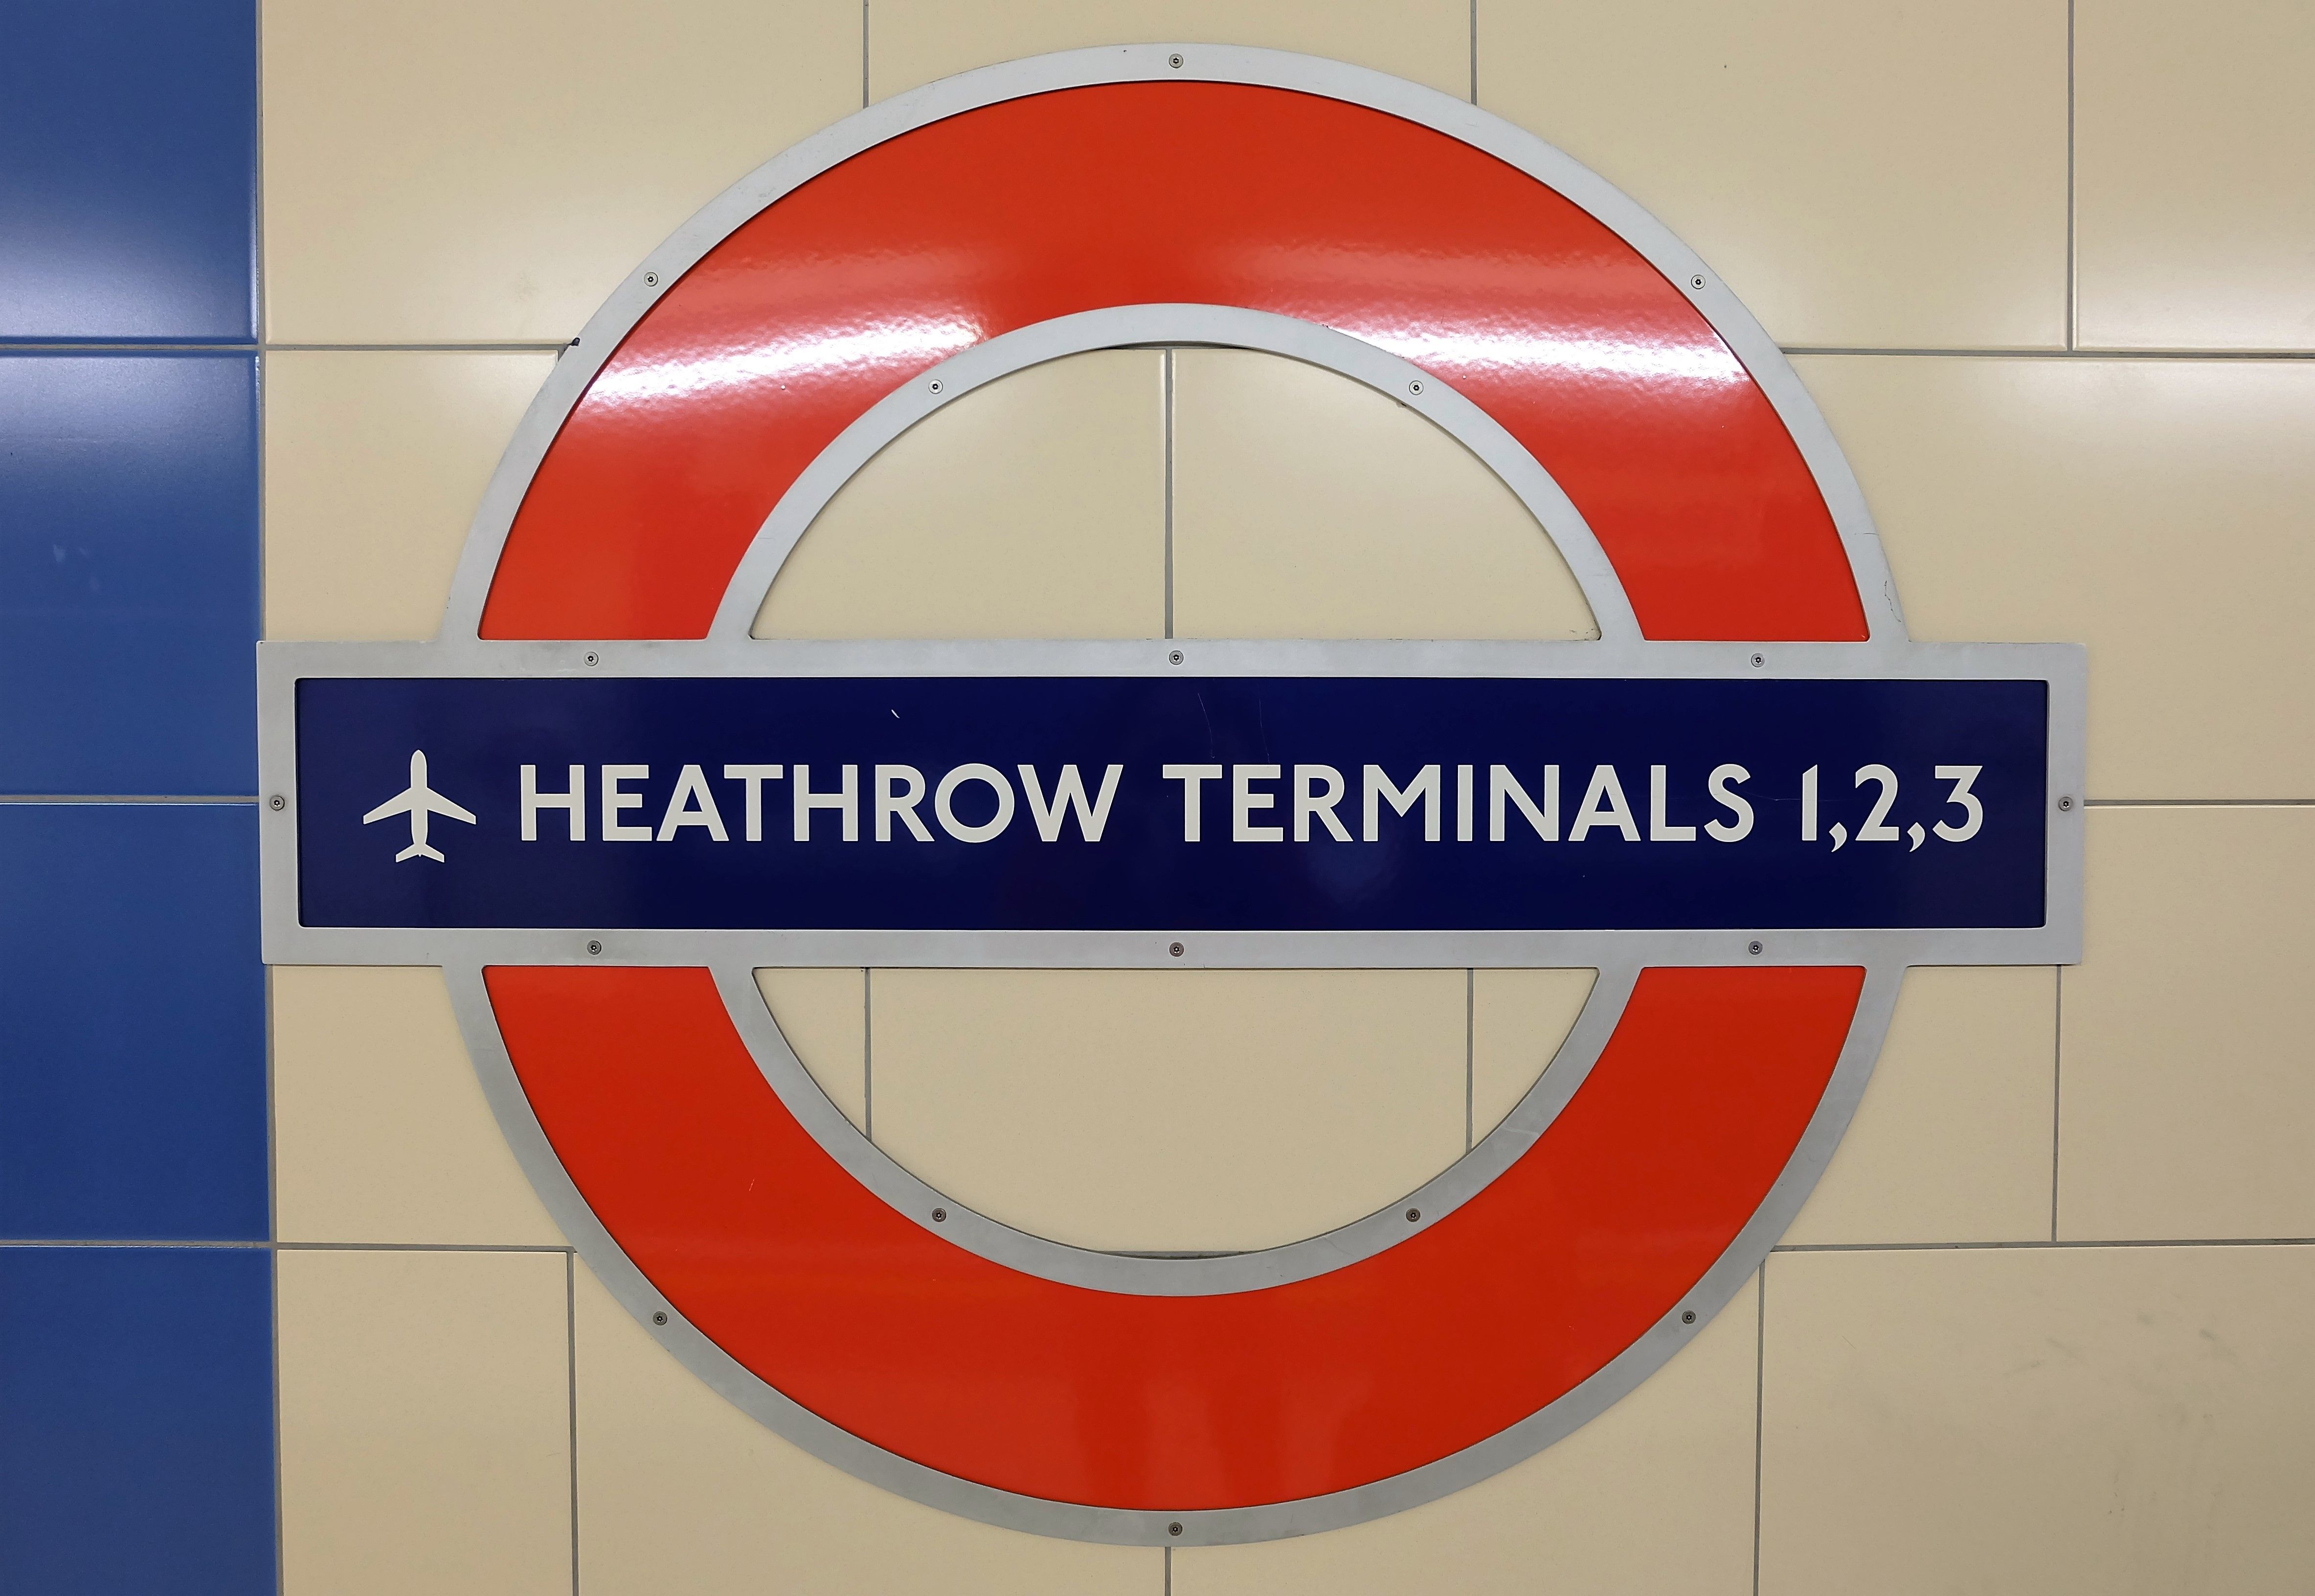 Heathrow undergound station